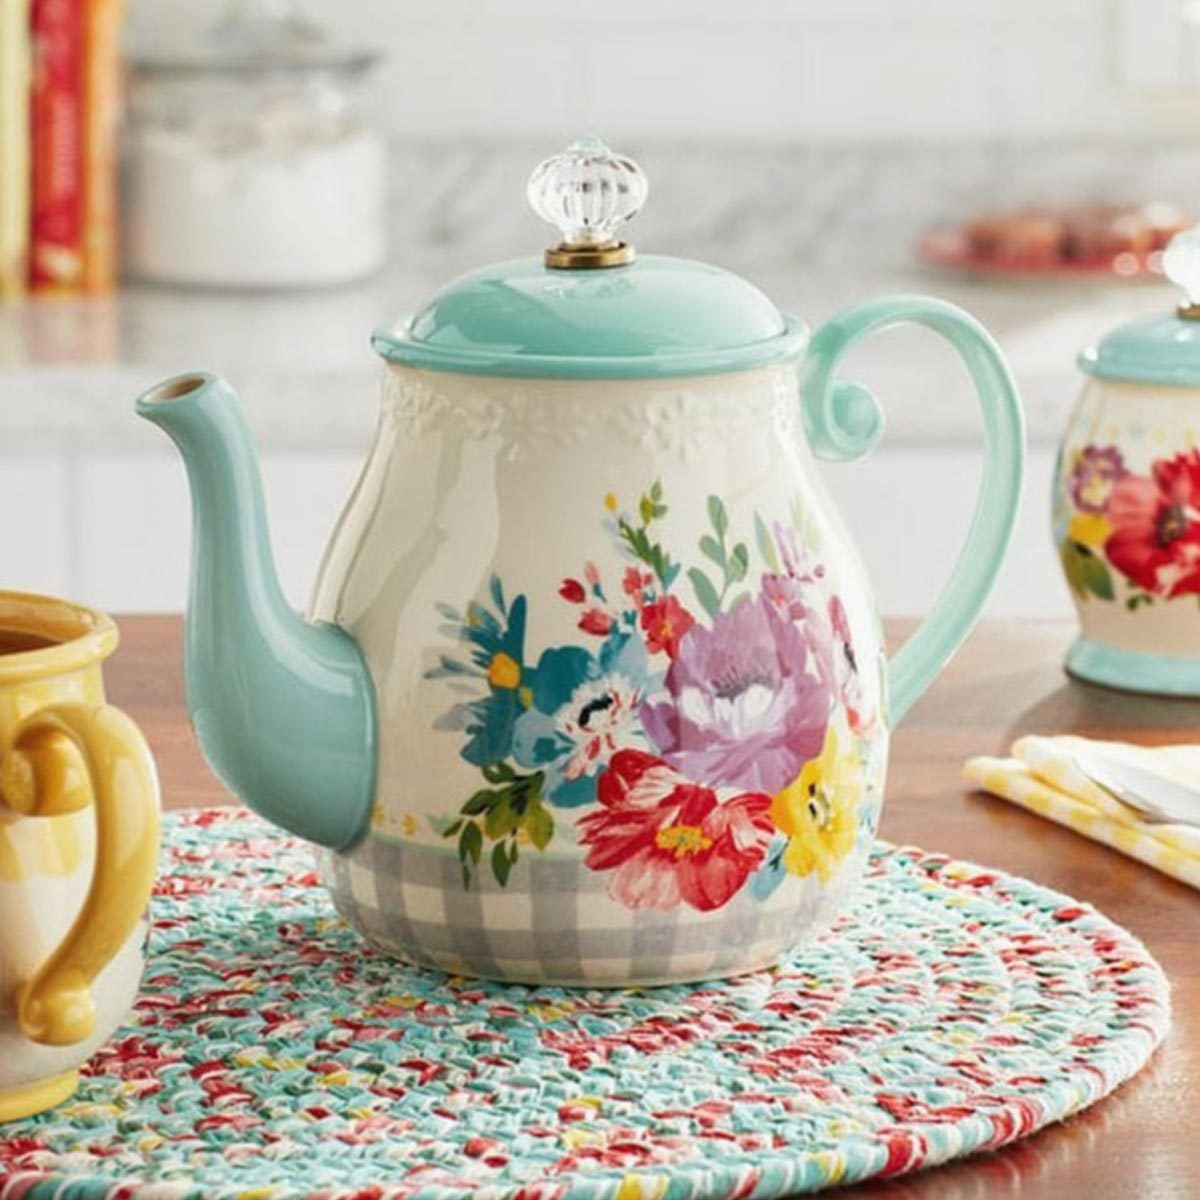 Tea Pot Ecomm Via Walmart.com 2